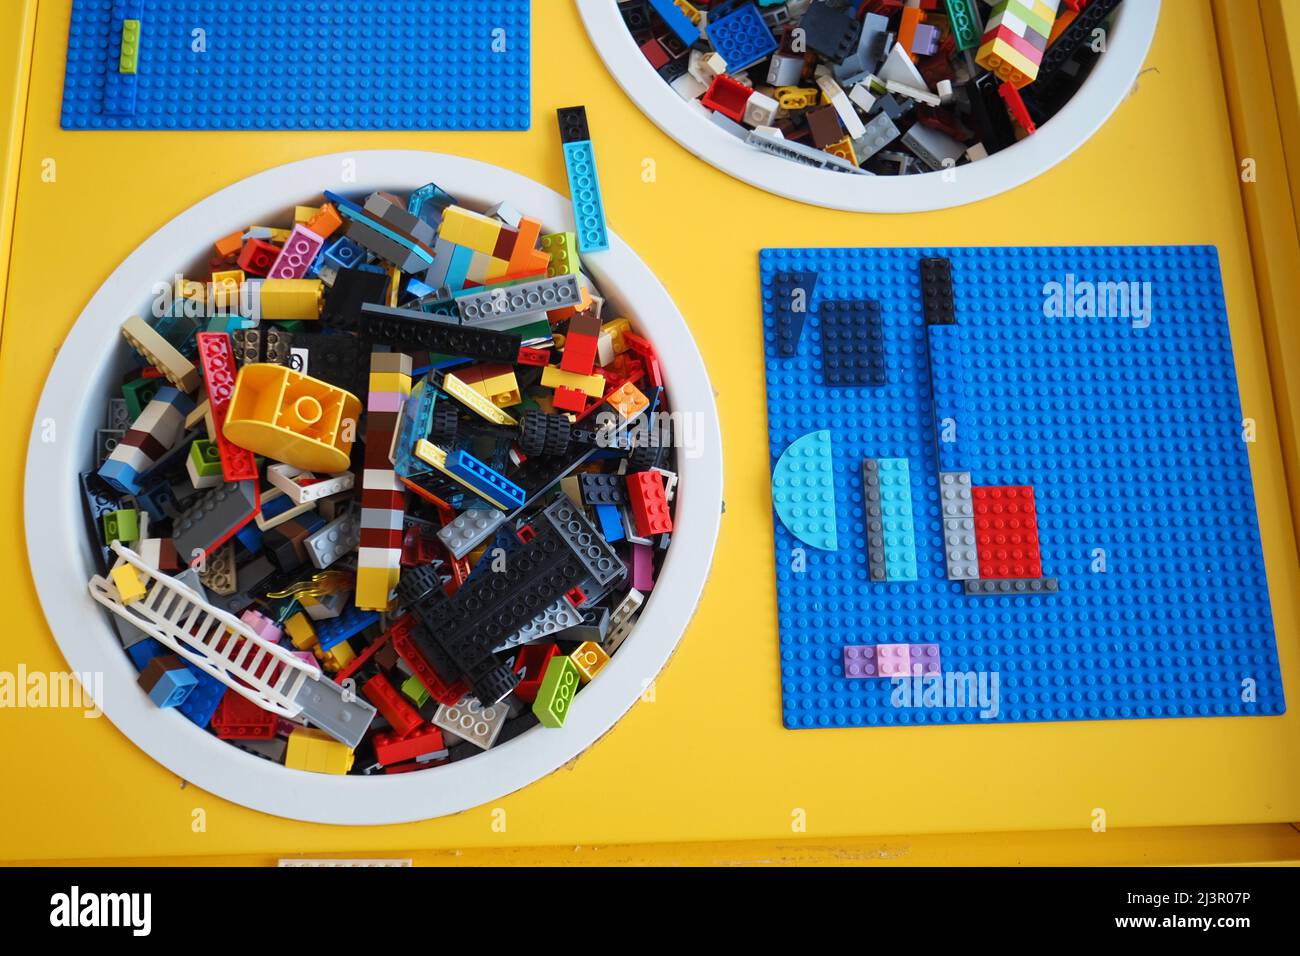 Boutique pour enfants, le monde de l'enfance. LEGO. Vente de jouets pour enfants. Photo de haute qualité Banque D'Images